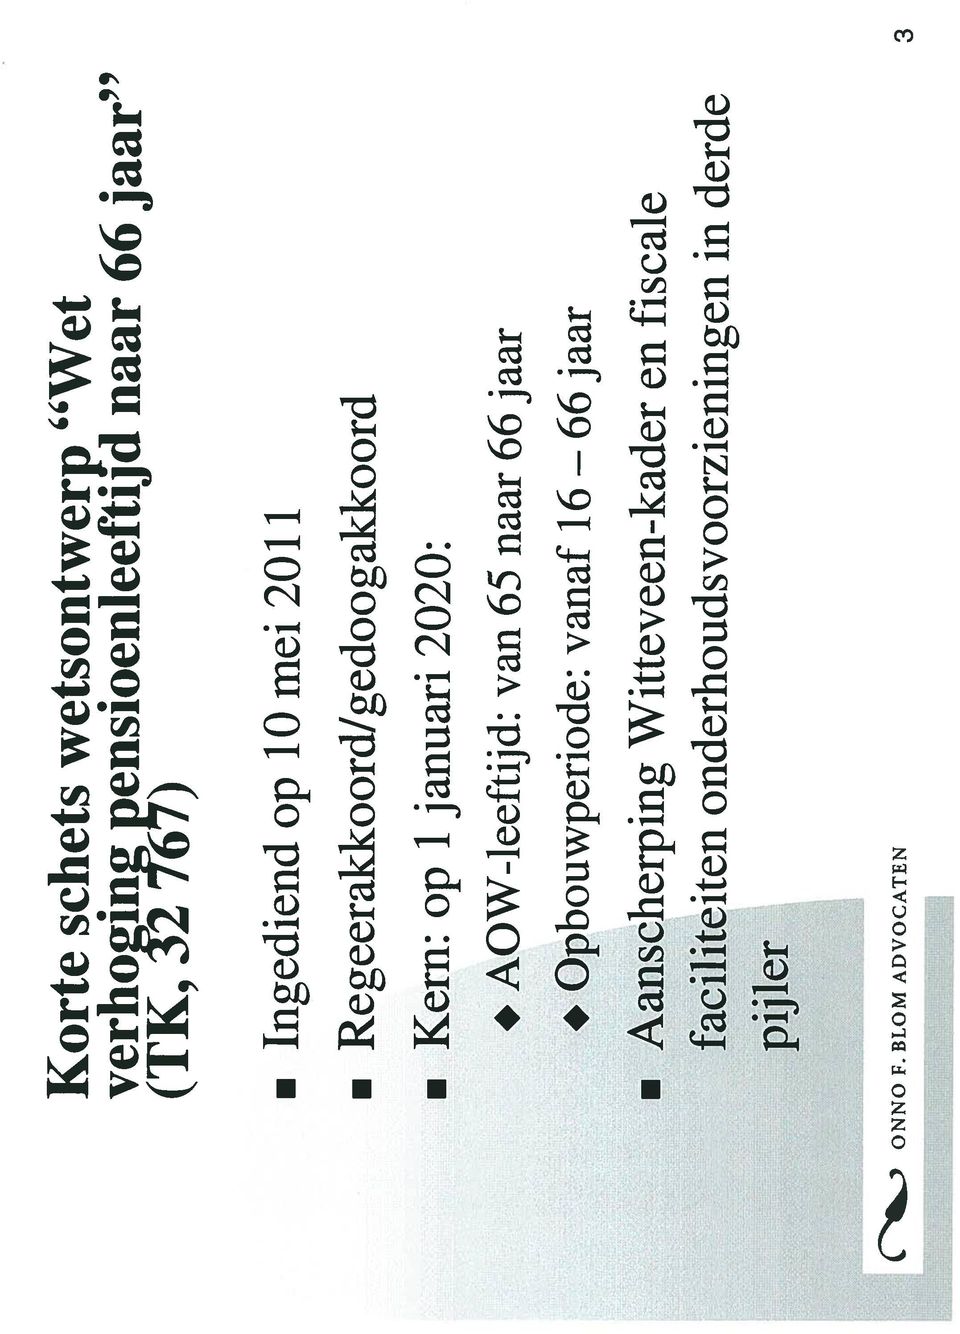 (TK, Y2 167) Ingediend op 10 mei 2011 Regeerakkoord/gedoogakkoord Kern: op 1 januari